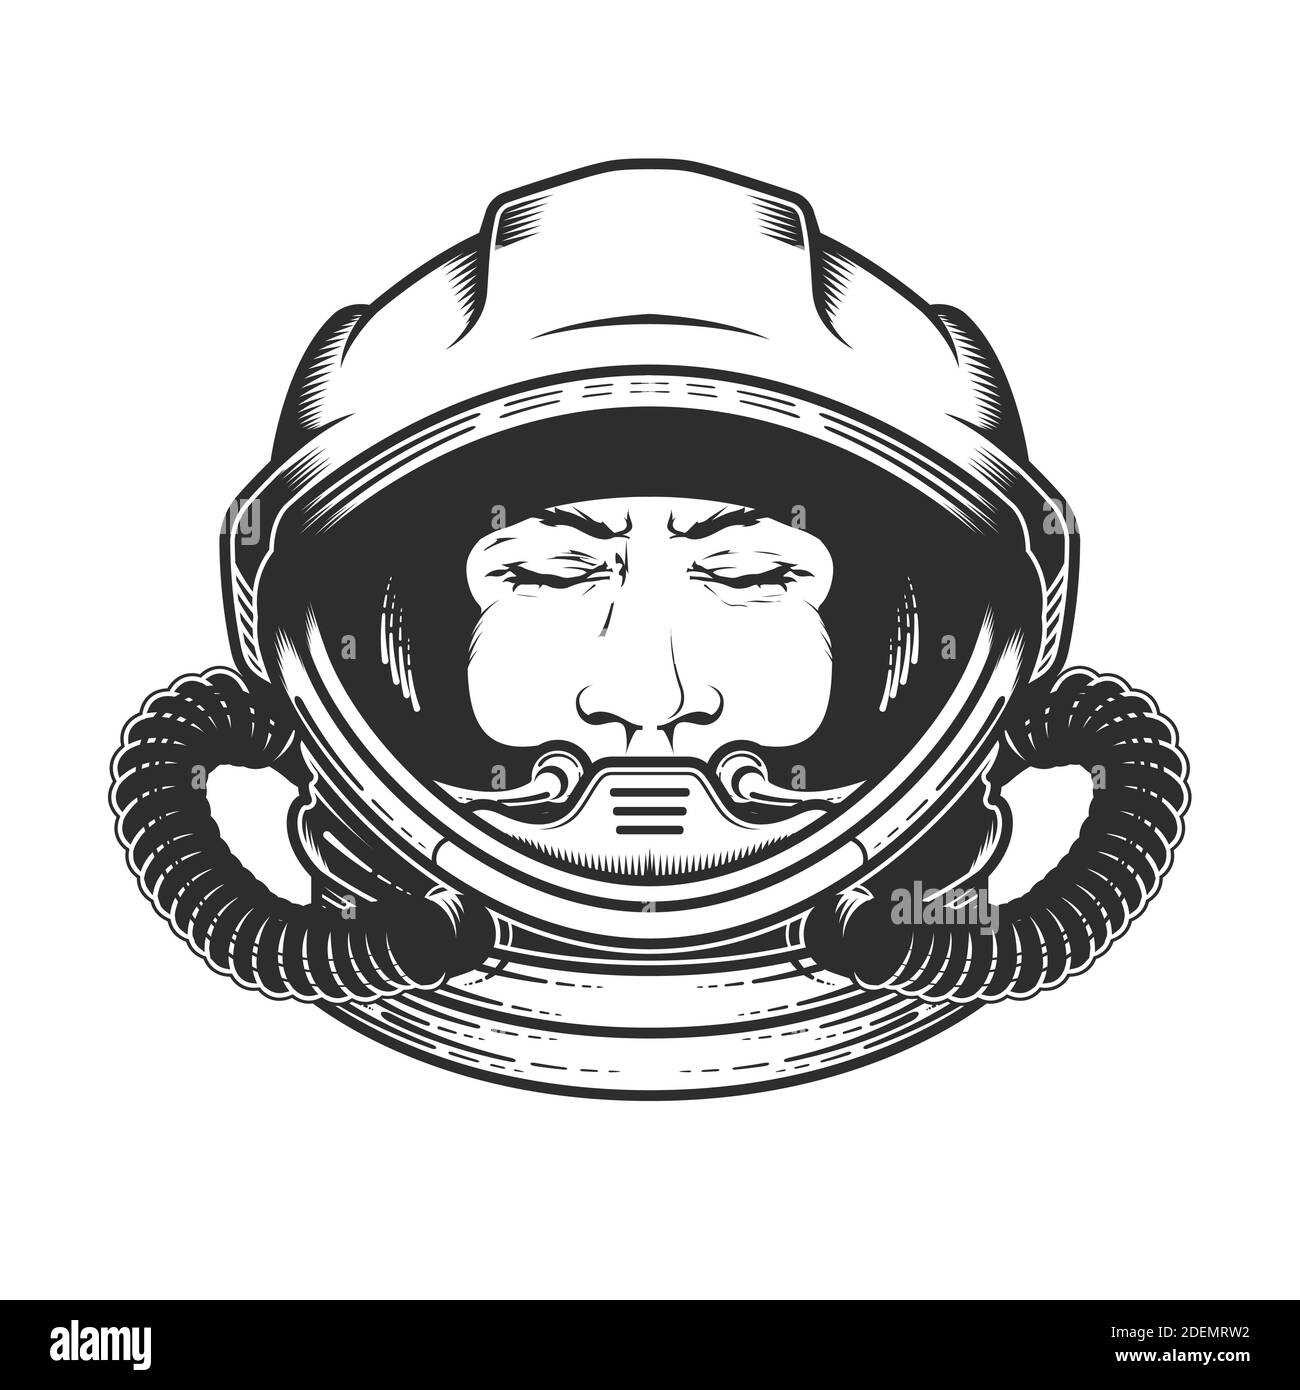 Visage de l'astronaute dans un casque spatial, portrait de l'astronaute dans un vaisseau spatial avec des yeux fermés, cosmonaute rêvant, pilote de vaisseau spatial, vecteur Illustration de Vecteur